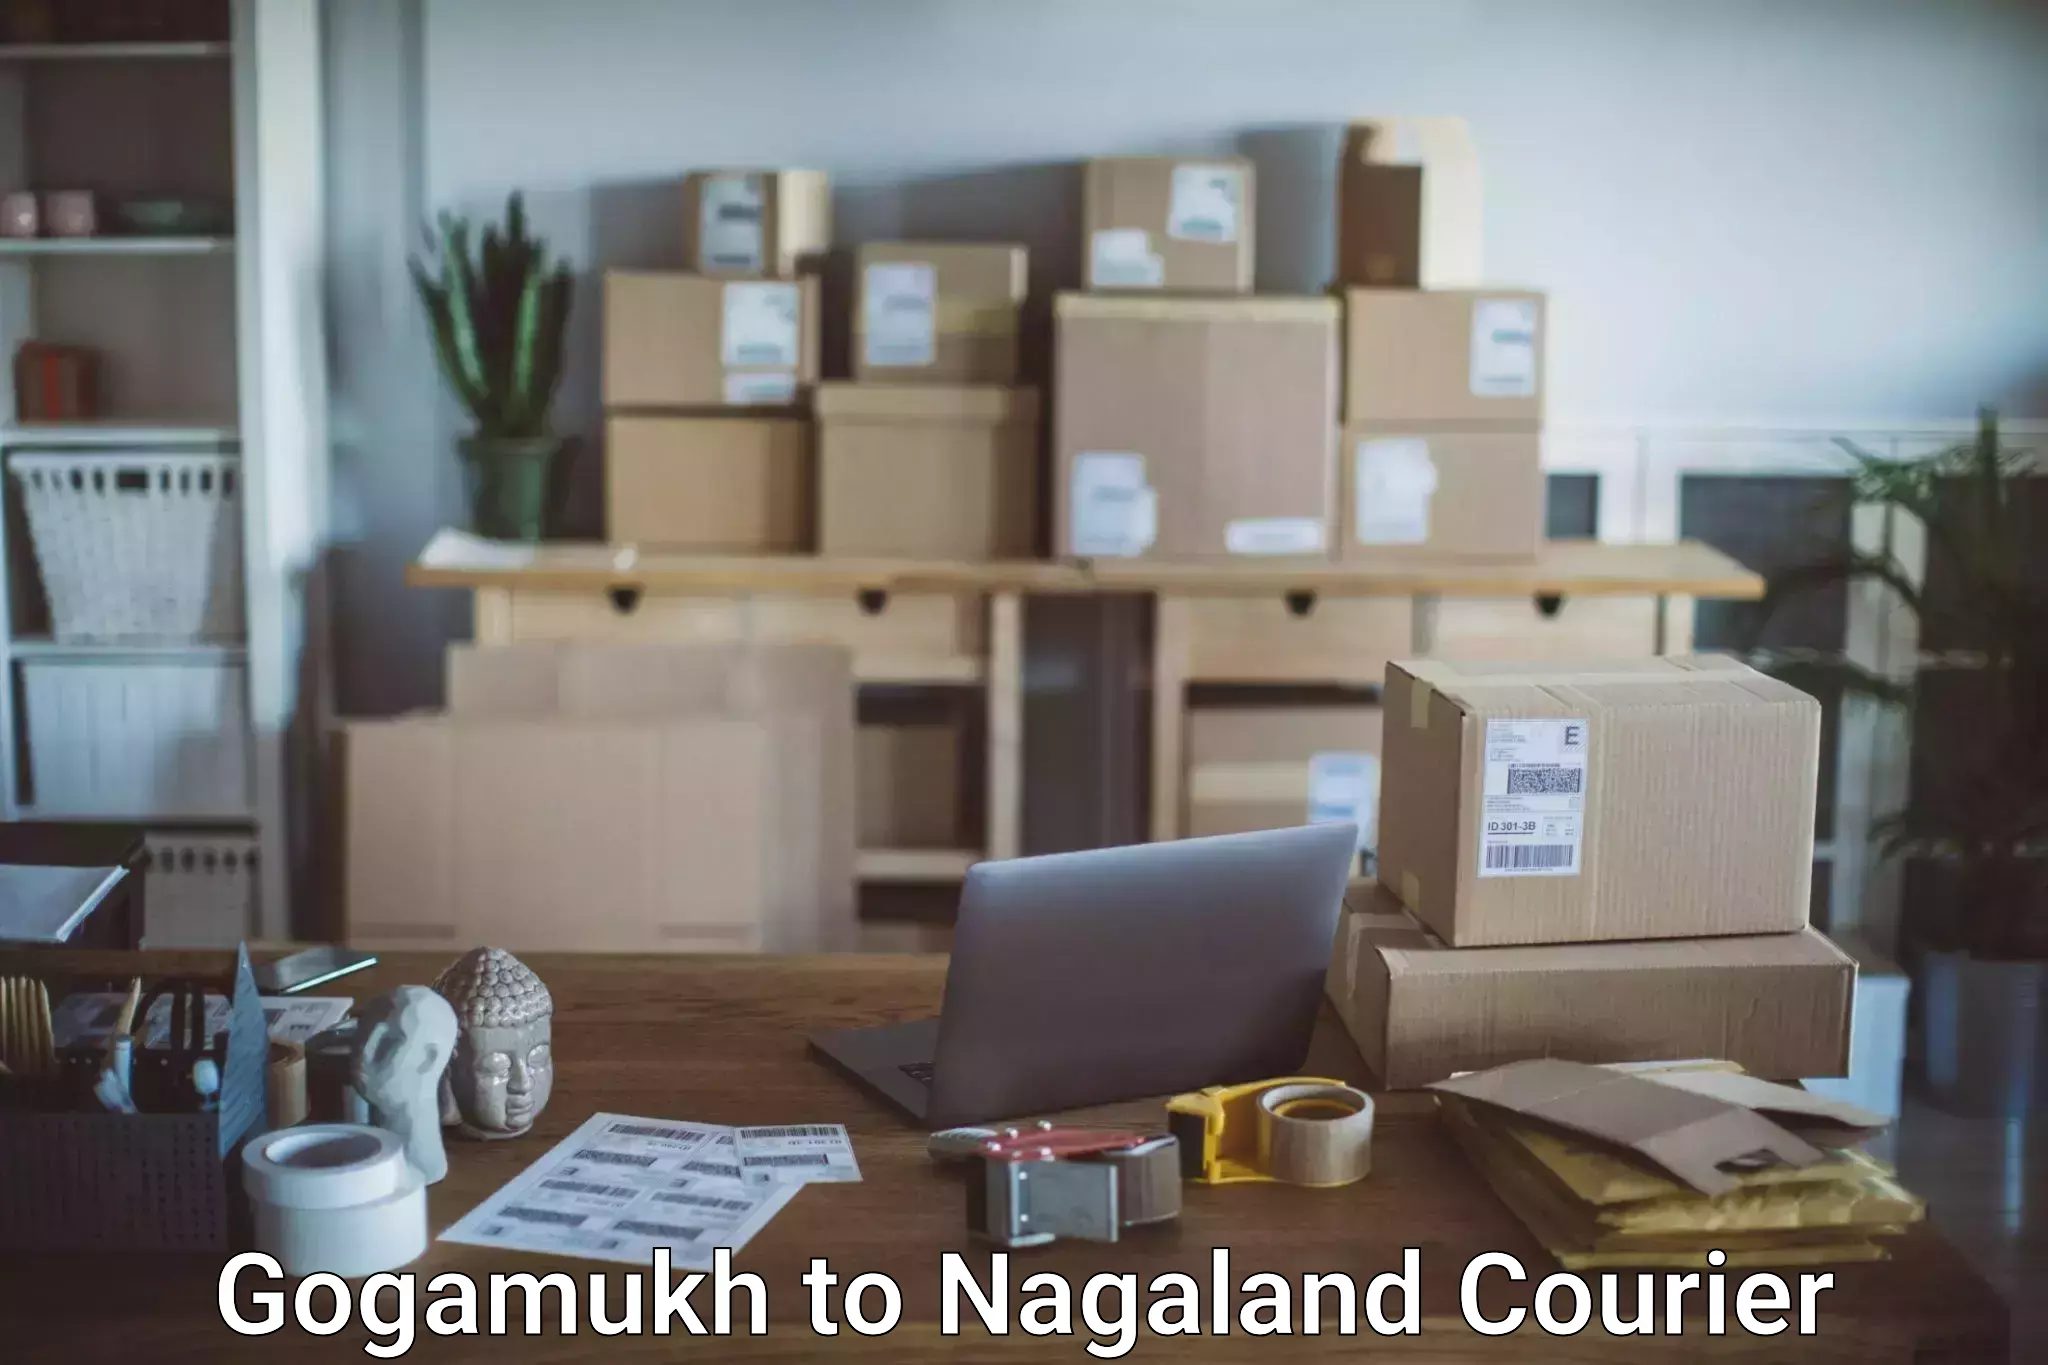 Luggage dispatch service Gogamukh to NIT Nagaland